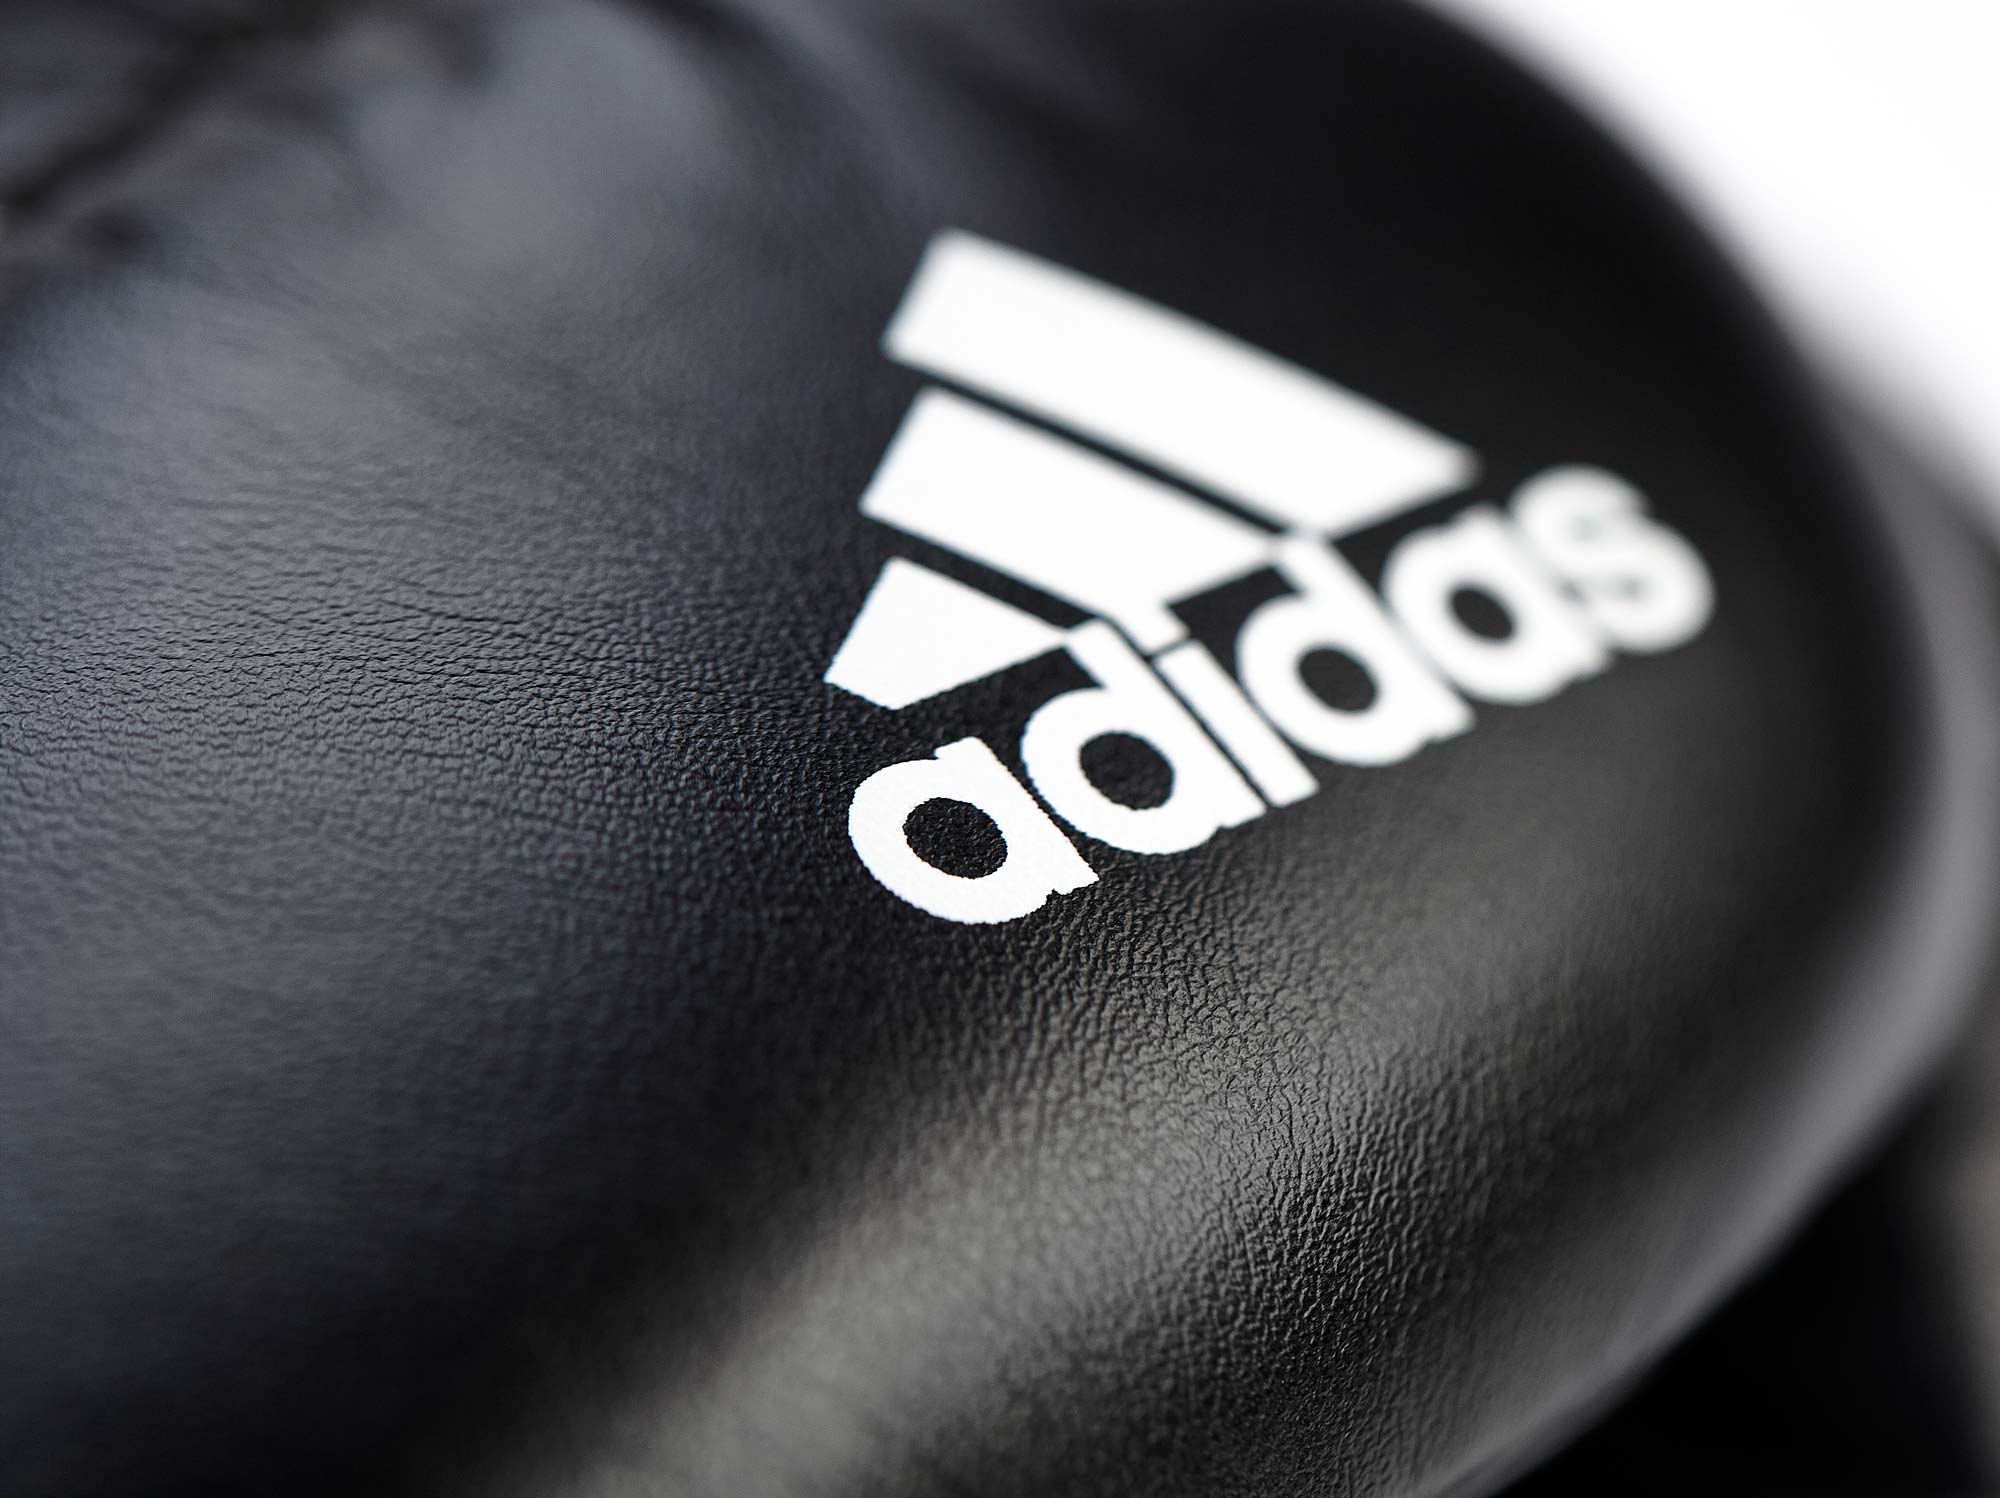 adidas Boxhandschuhe Speed 100, ADISBG100 schwarz/weiß